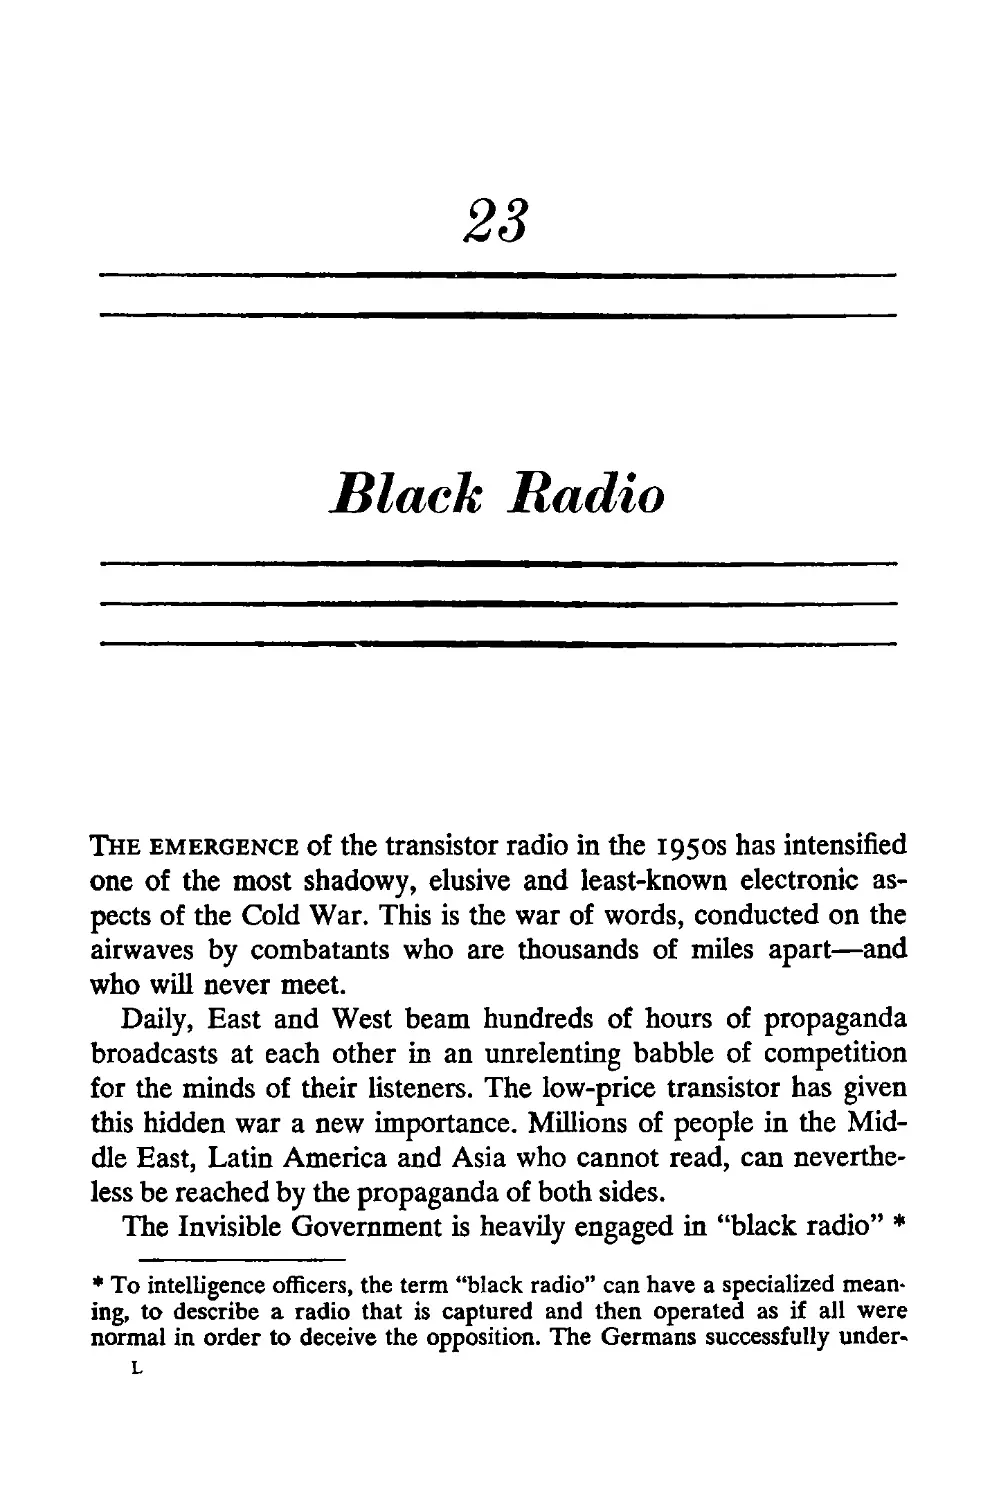 23. Black Radio